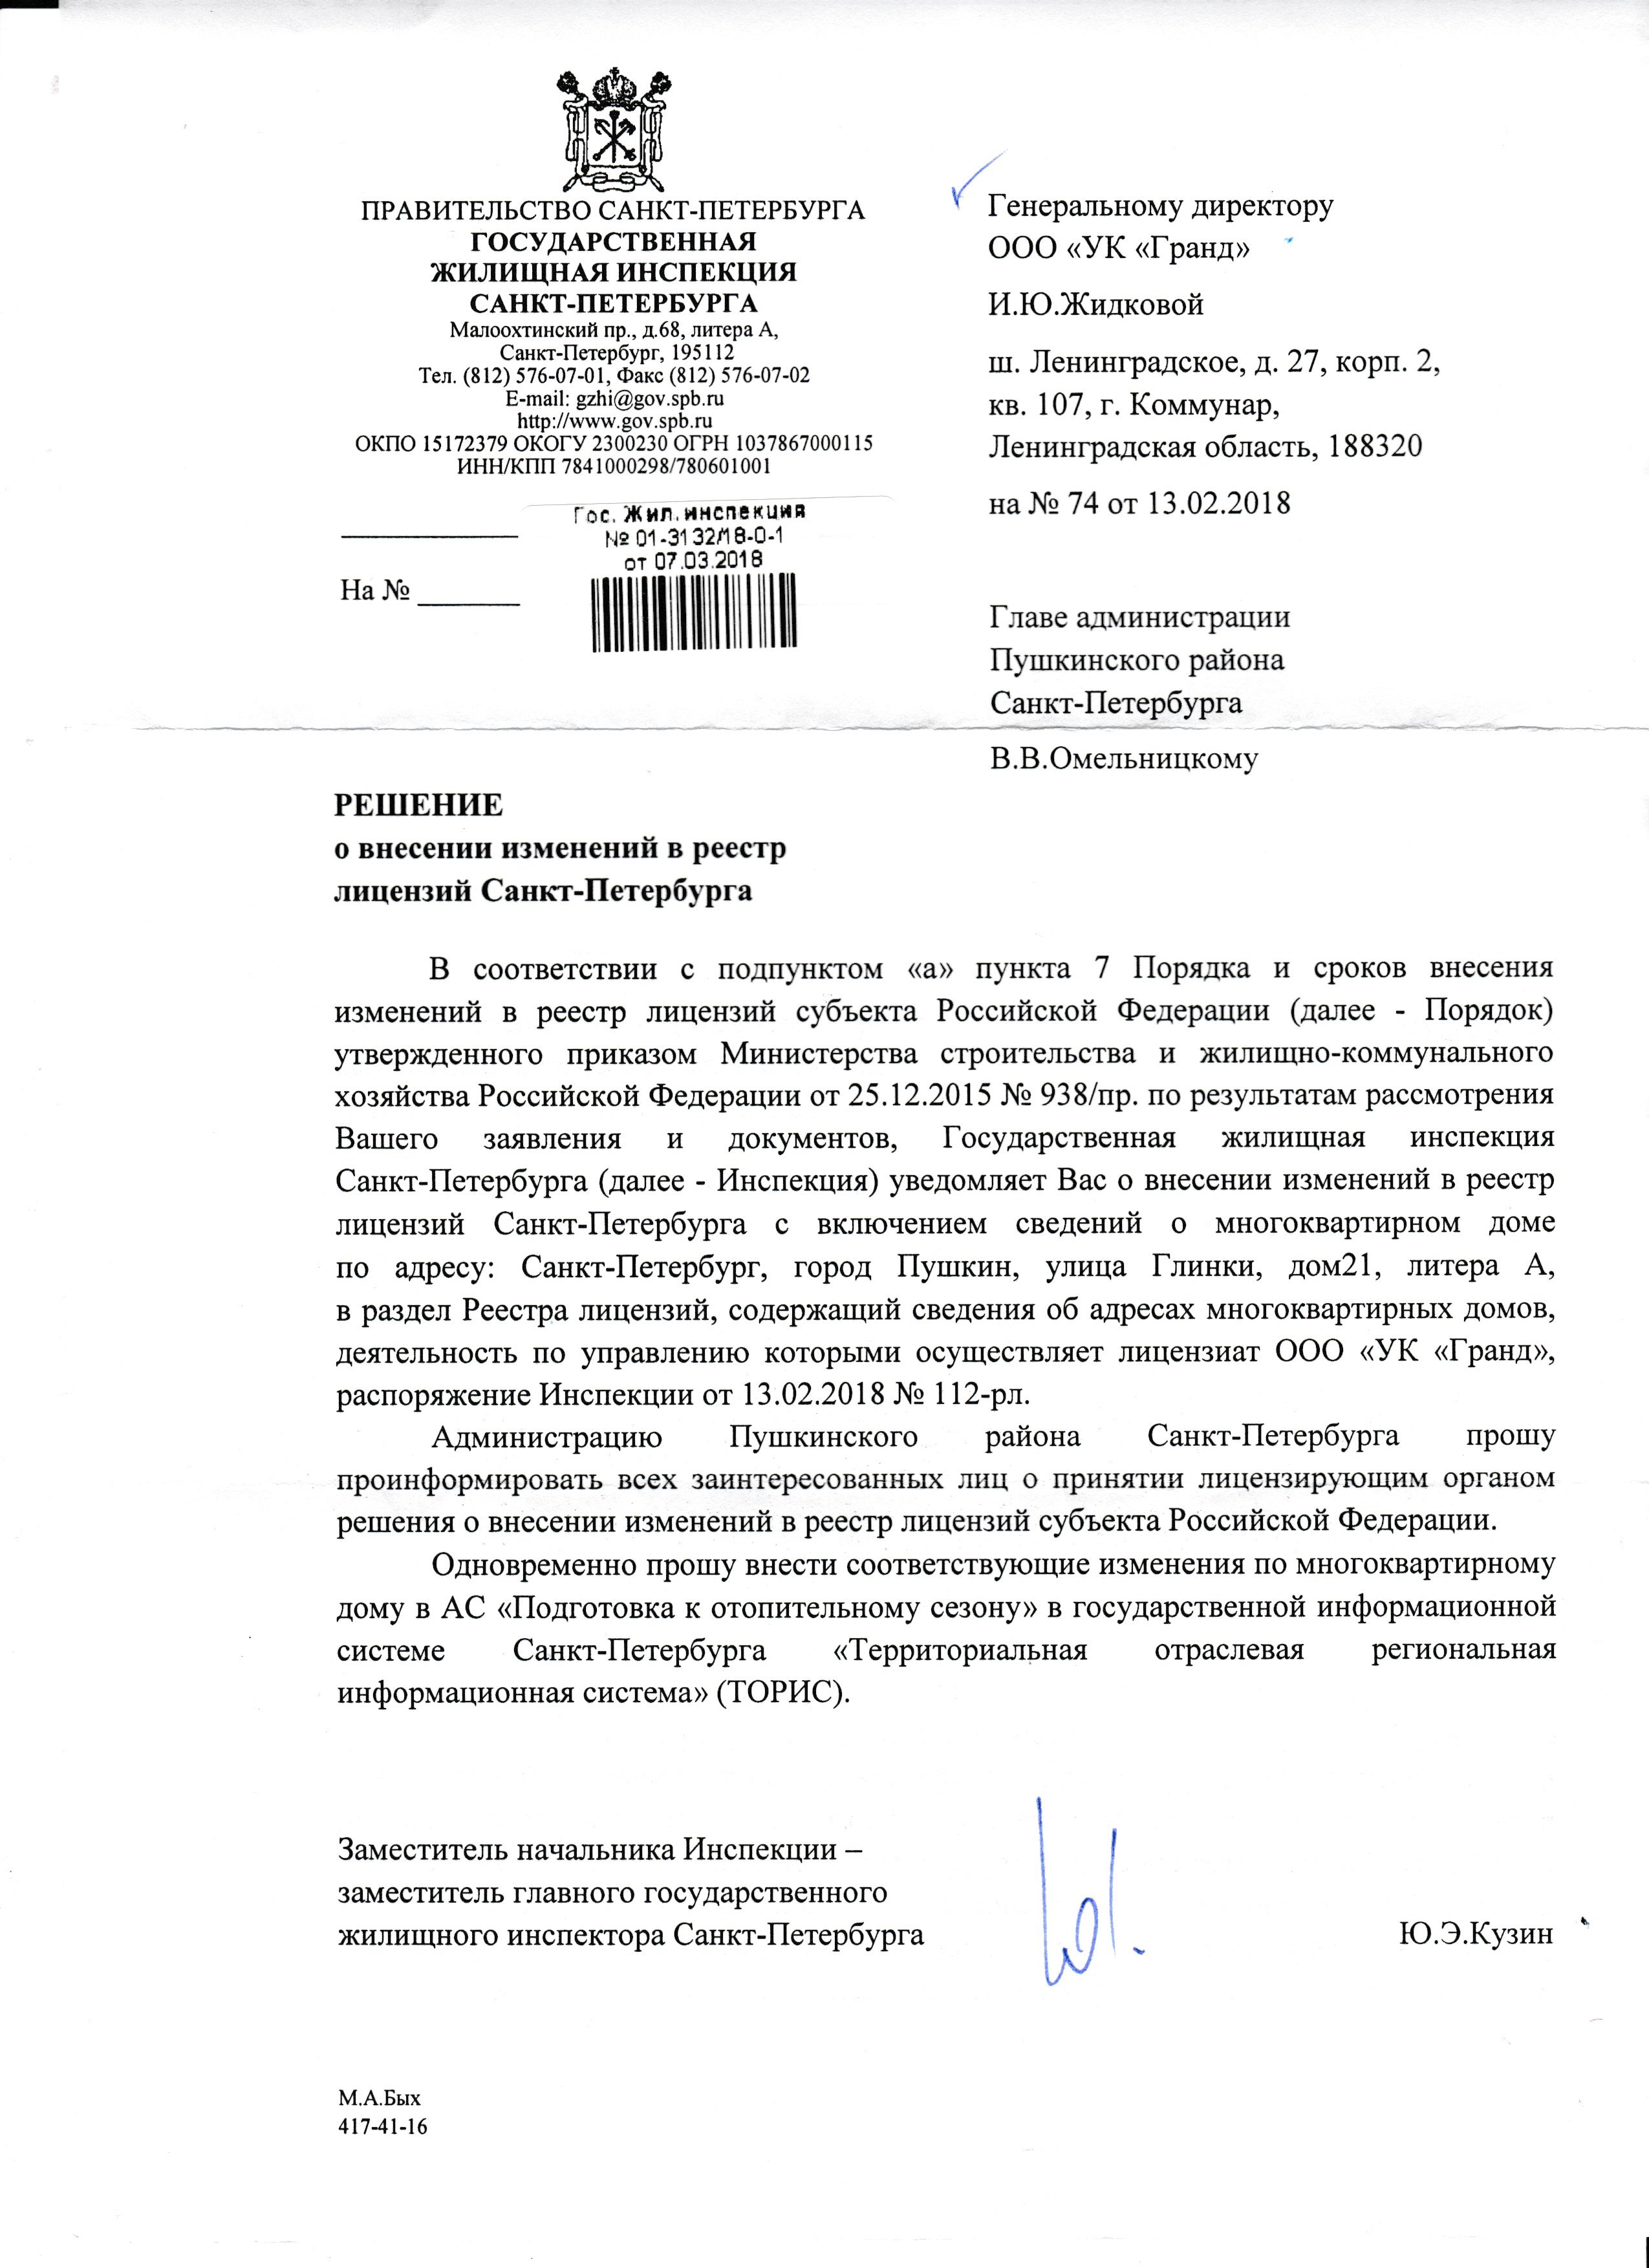 Распоряжение о внесении в лицензию МКД по адресу: г.Пушкин, ул.Глинки, д.21 литер А